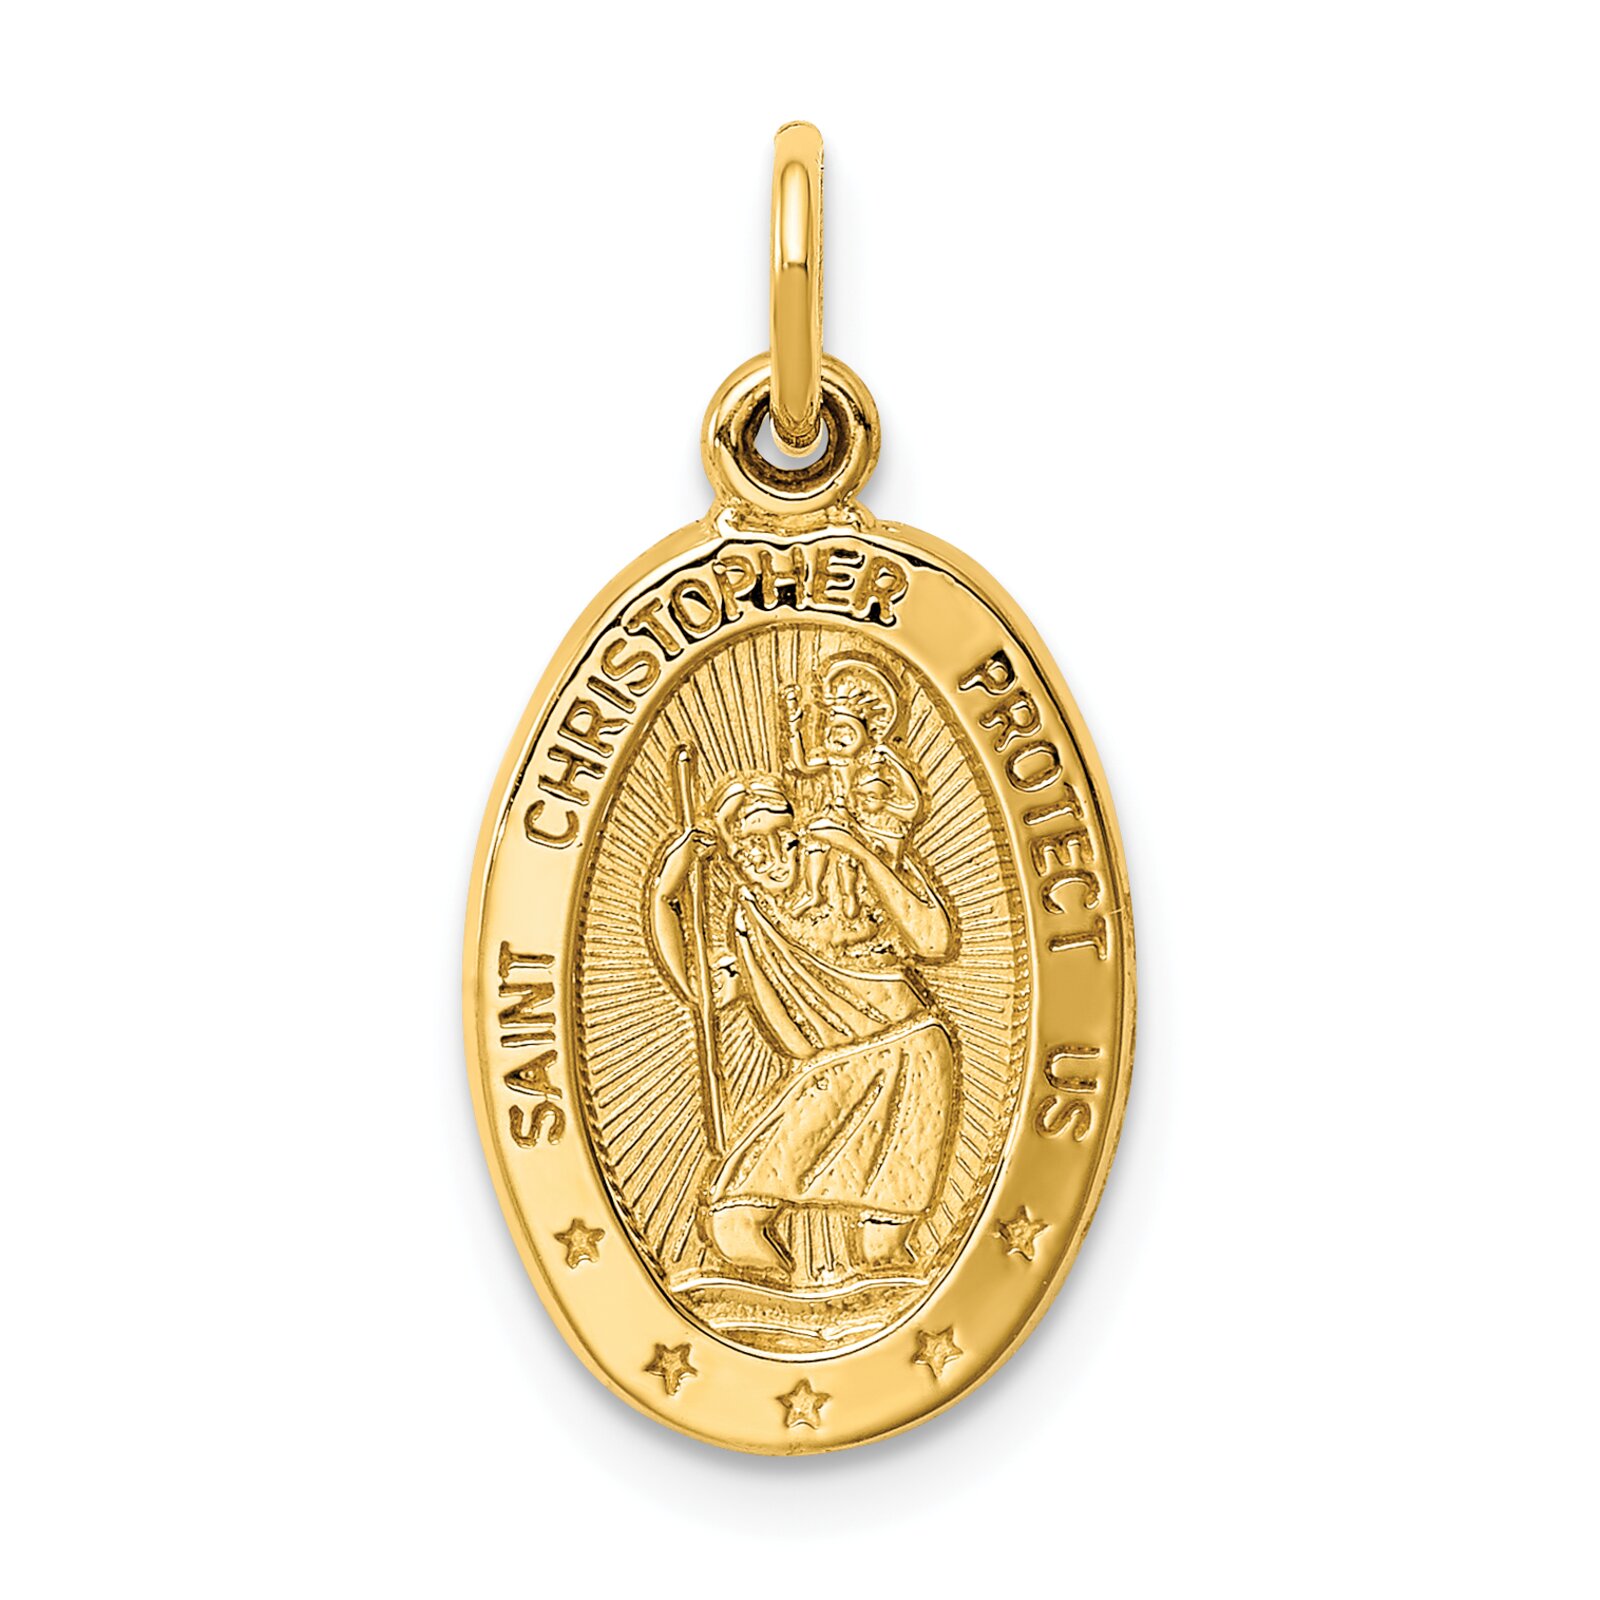 Findingking 14K Gold Saint Christopher Medal Charm